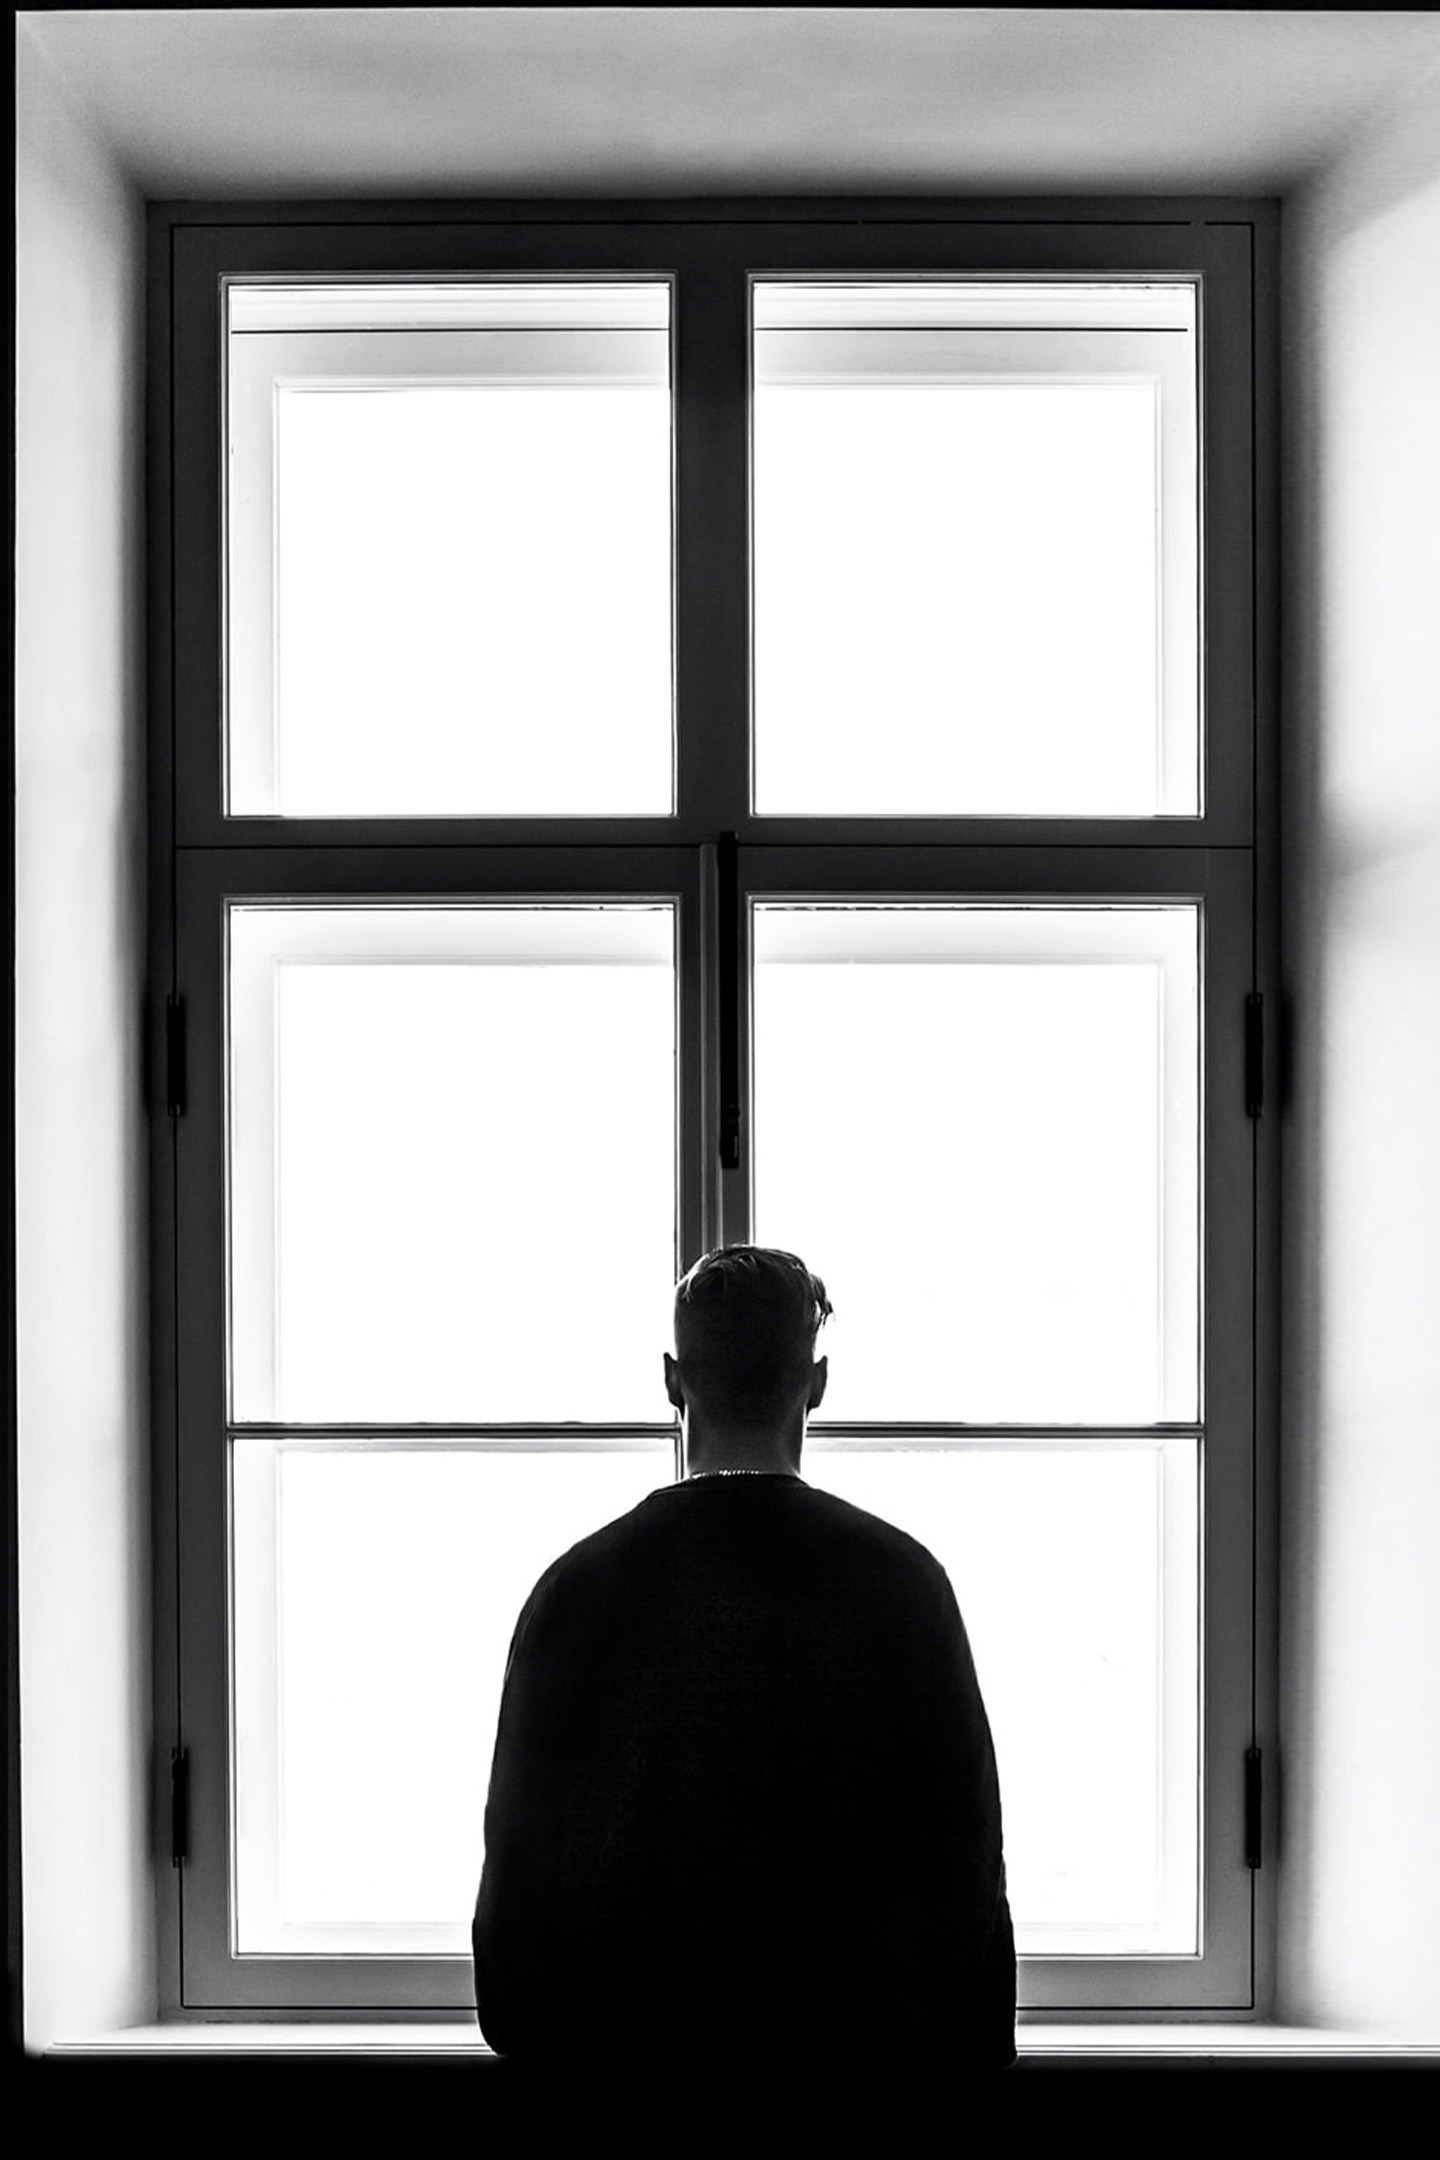 Schwarz-Weiß-Foto eines dunkel gekleideten Mannes, der vor einem großen Sprossenfenster steht